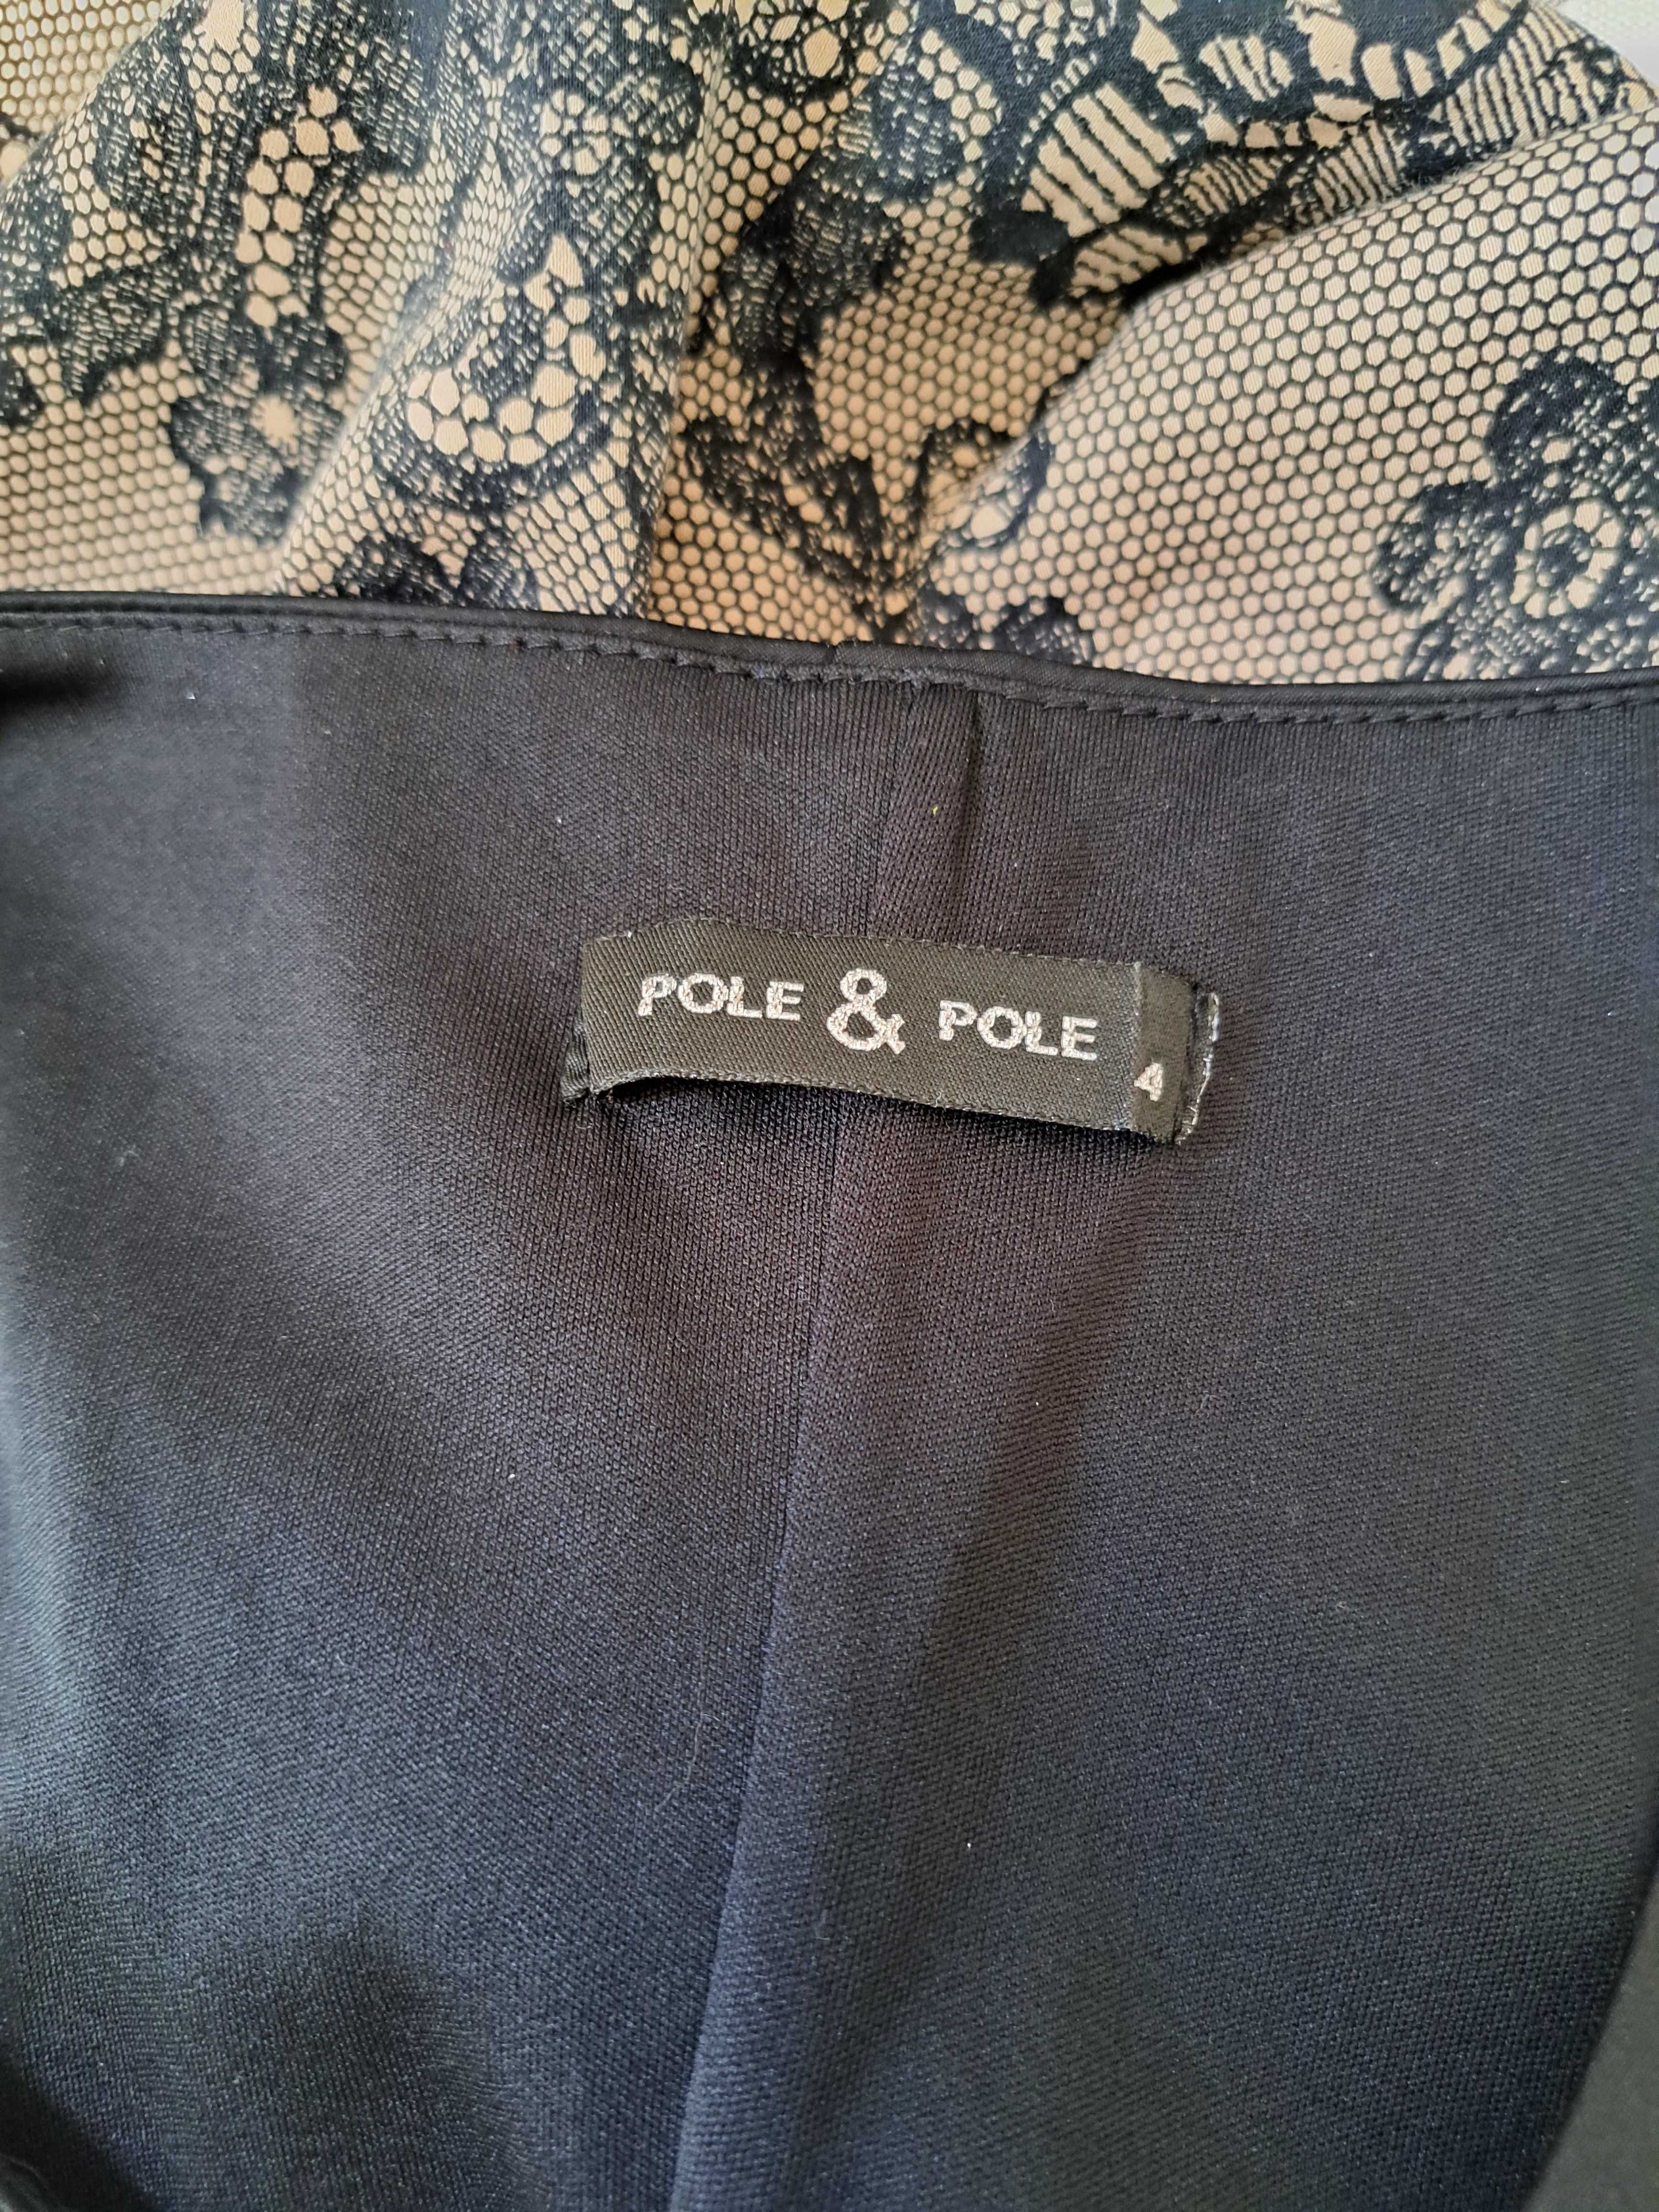 Krótka  sukienka bez rękawów firmy Pole&Pole , rozmiar M/L